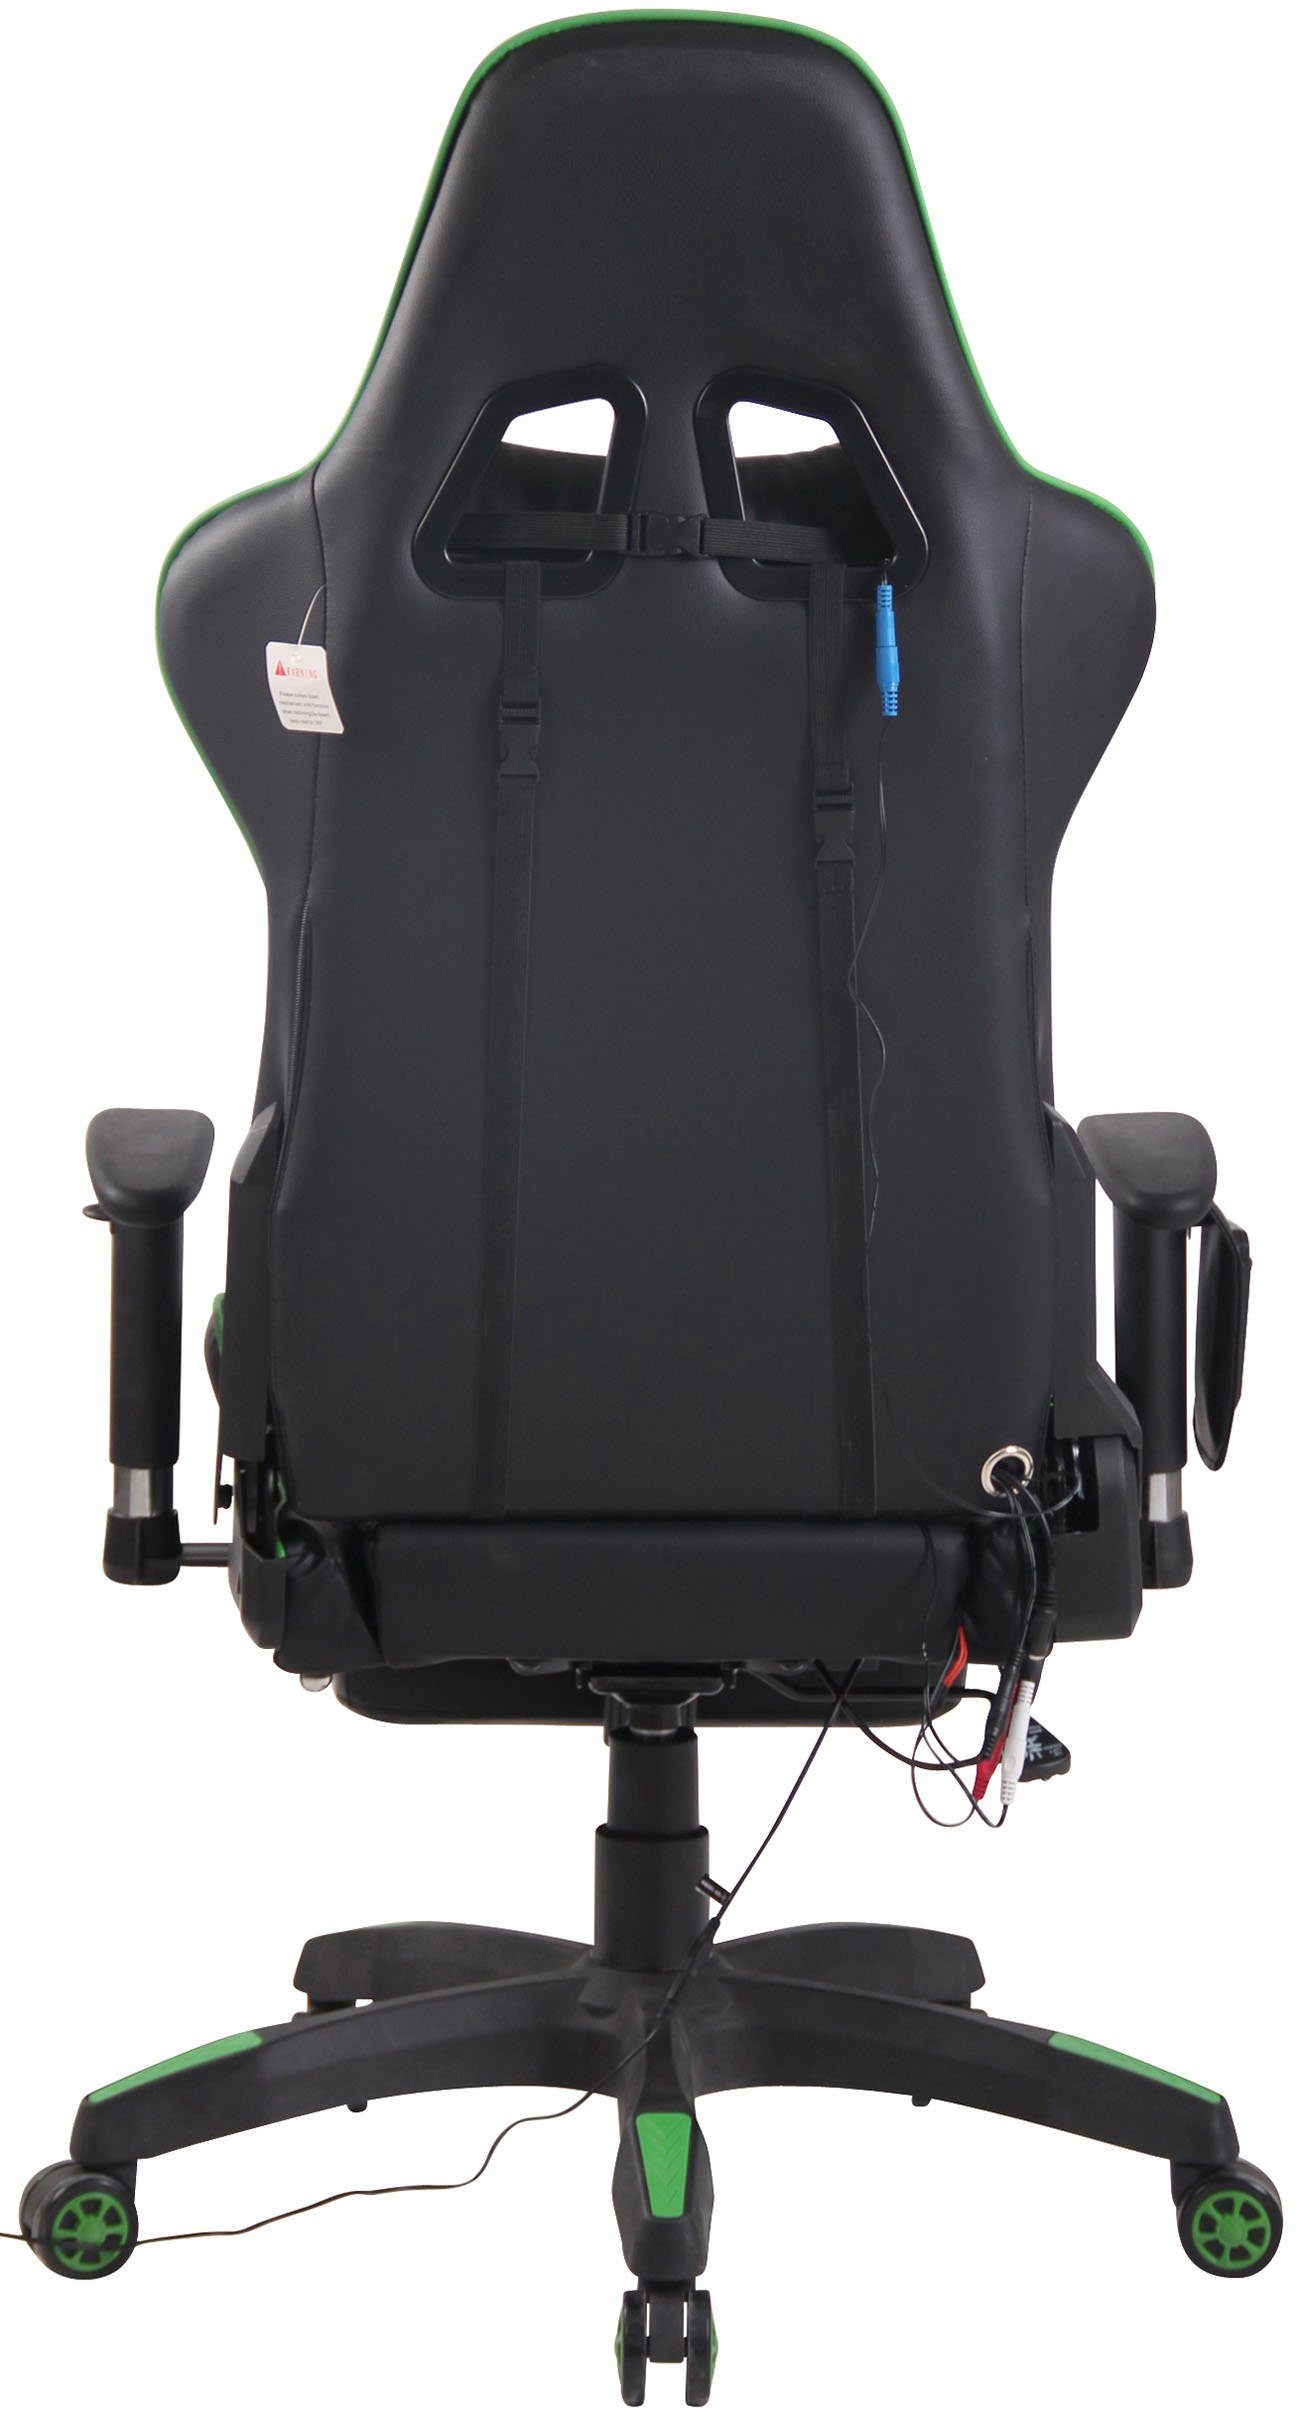 CLP Chair XFM schwarz/grün Kunstleder, Gaming Massagefunktion, Fußablage Turbo